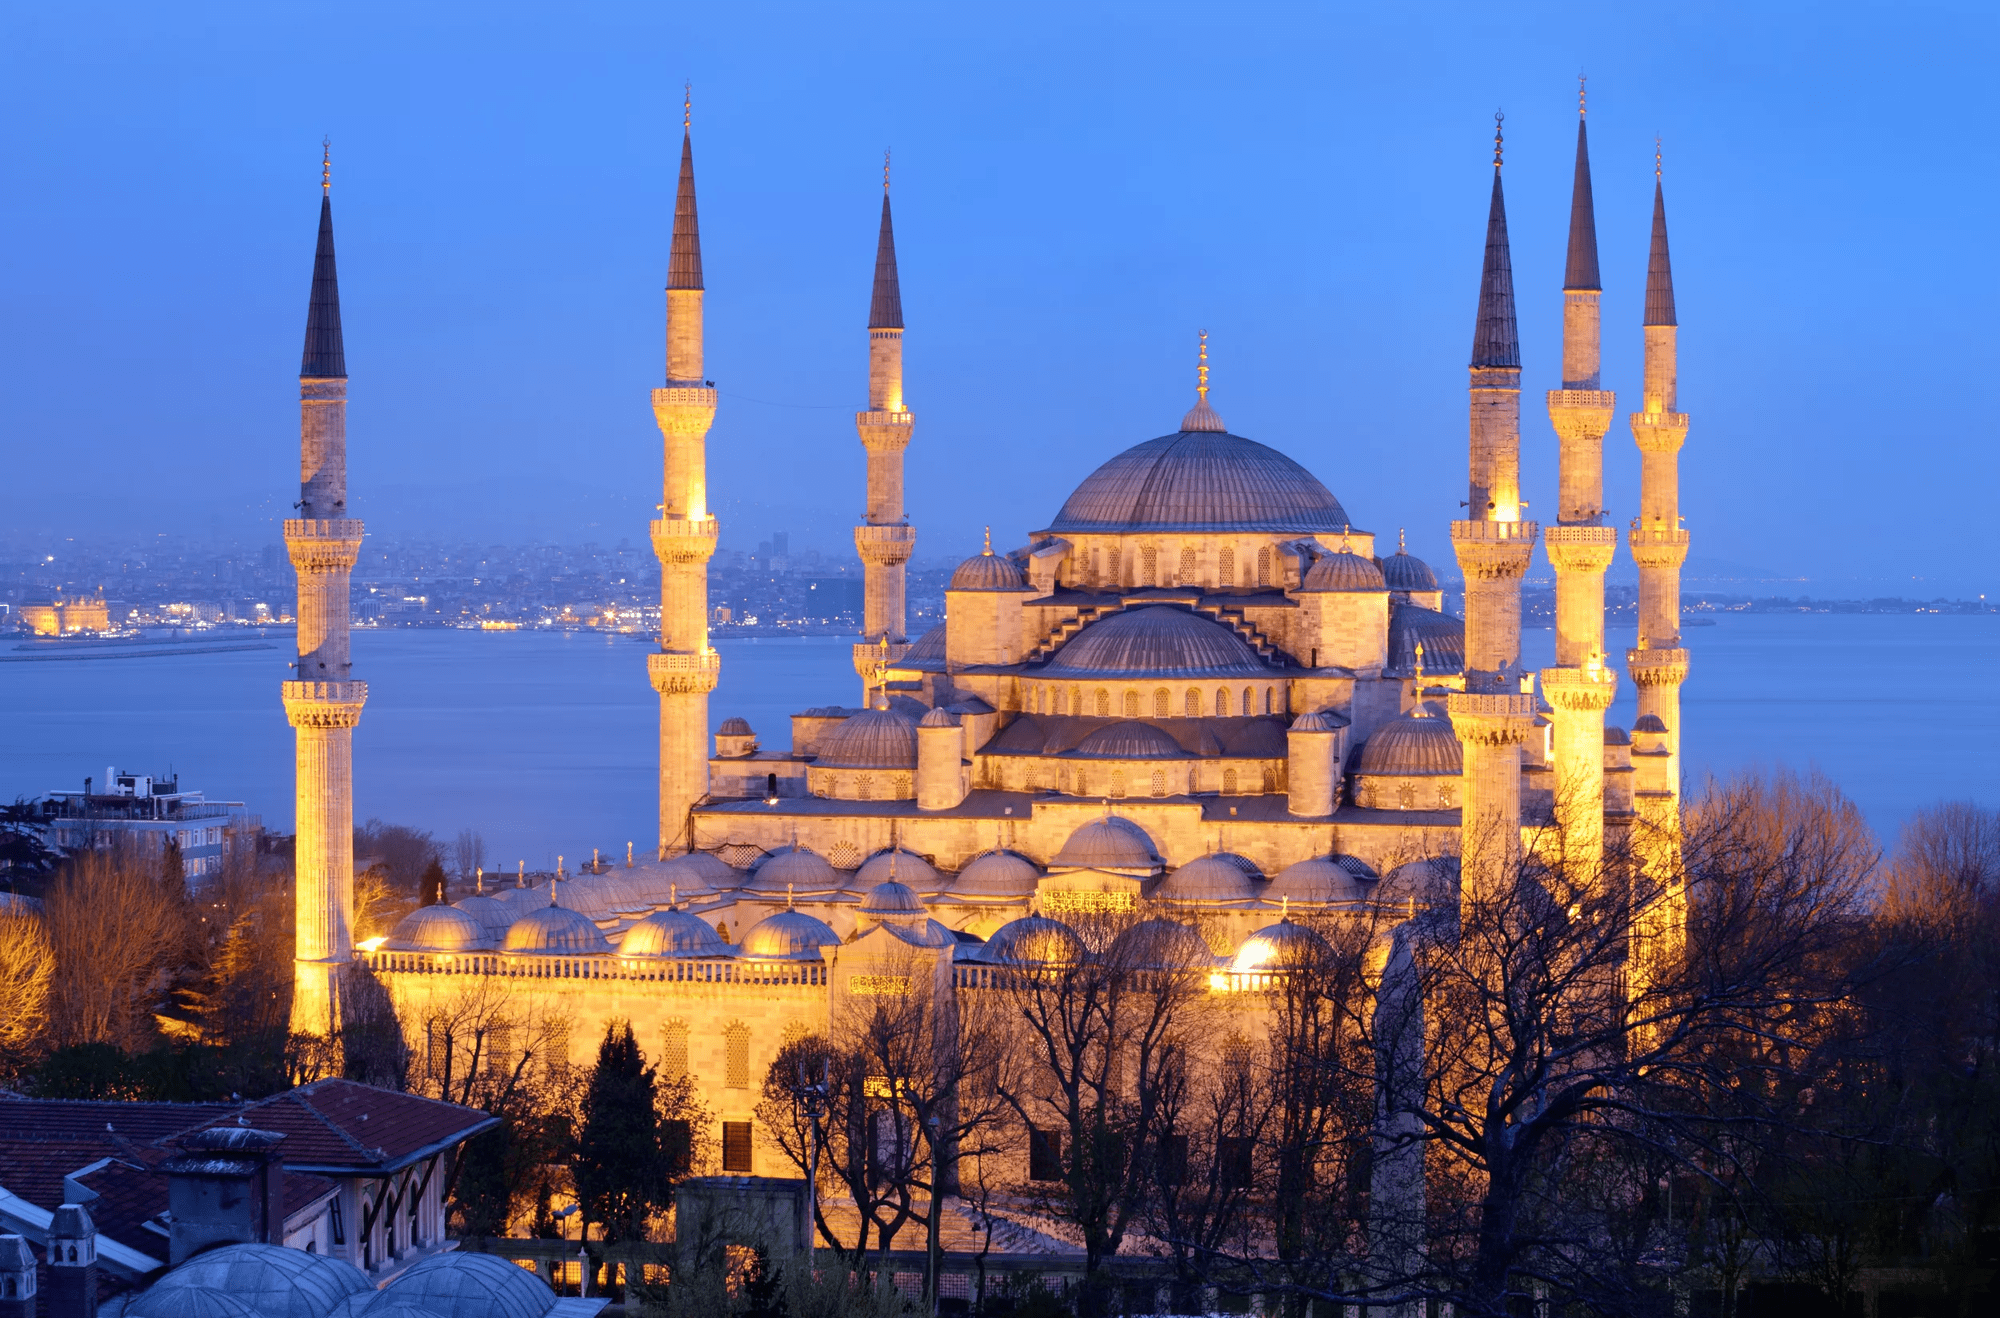 14-daagse treinrondreis de Oriënt Express van Wenen naar Istanbul